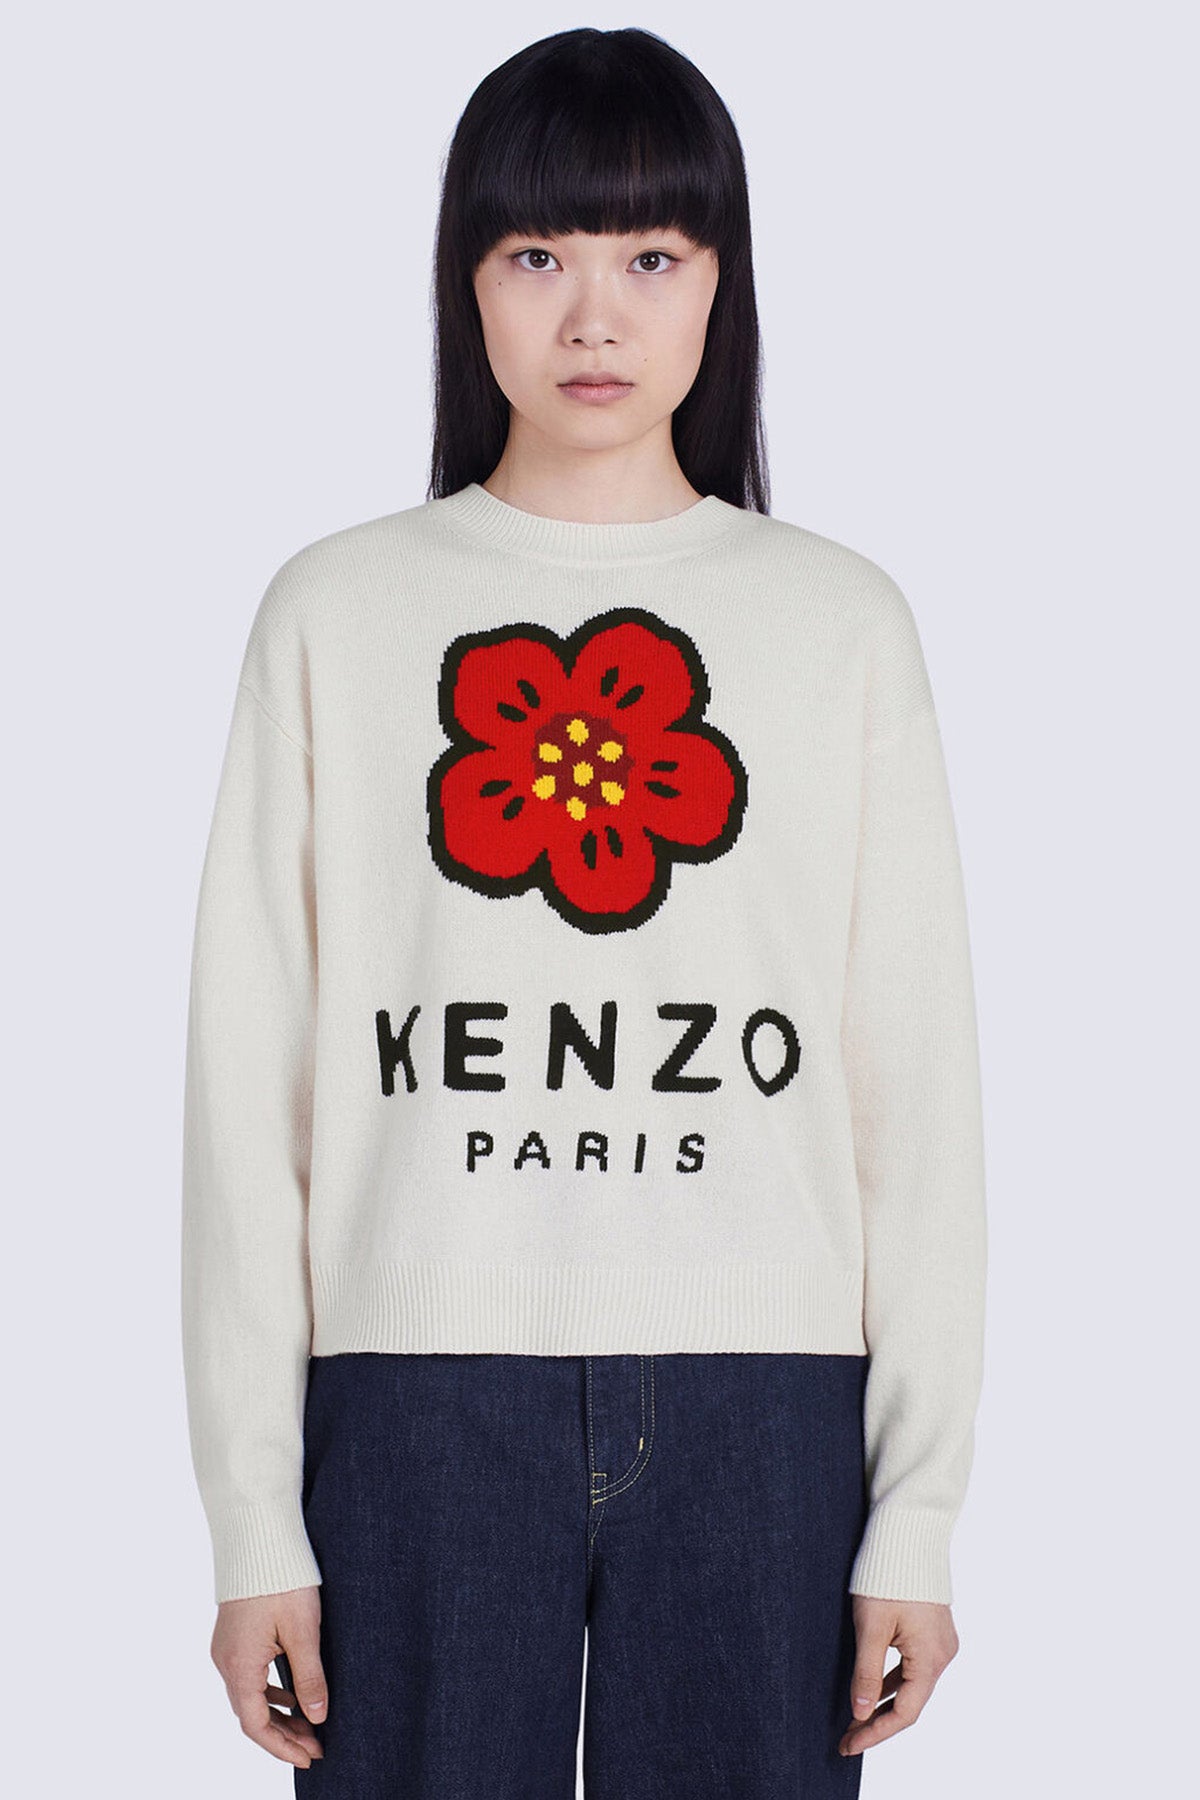 Kenzo Boke Flower Logolu Örgü Yün Triko-Libas Trendy Fashion Store